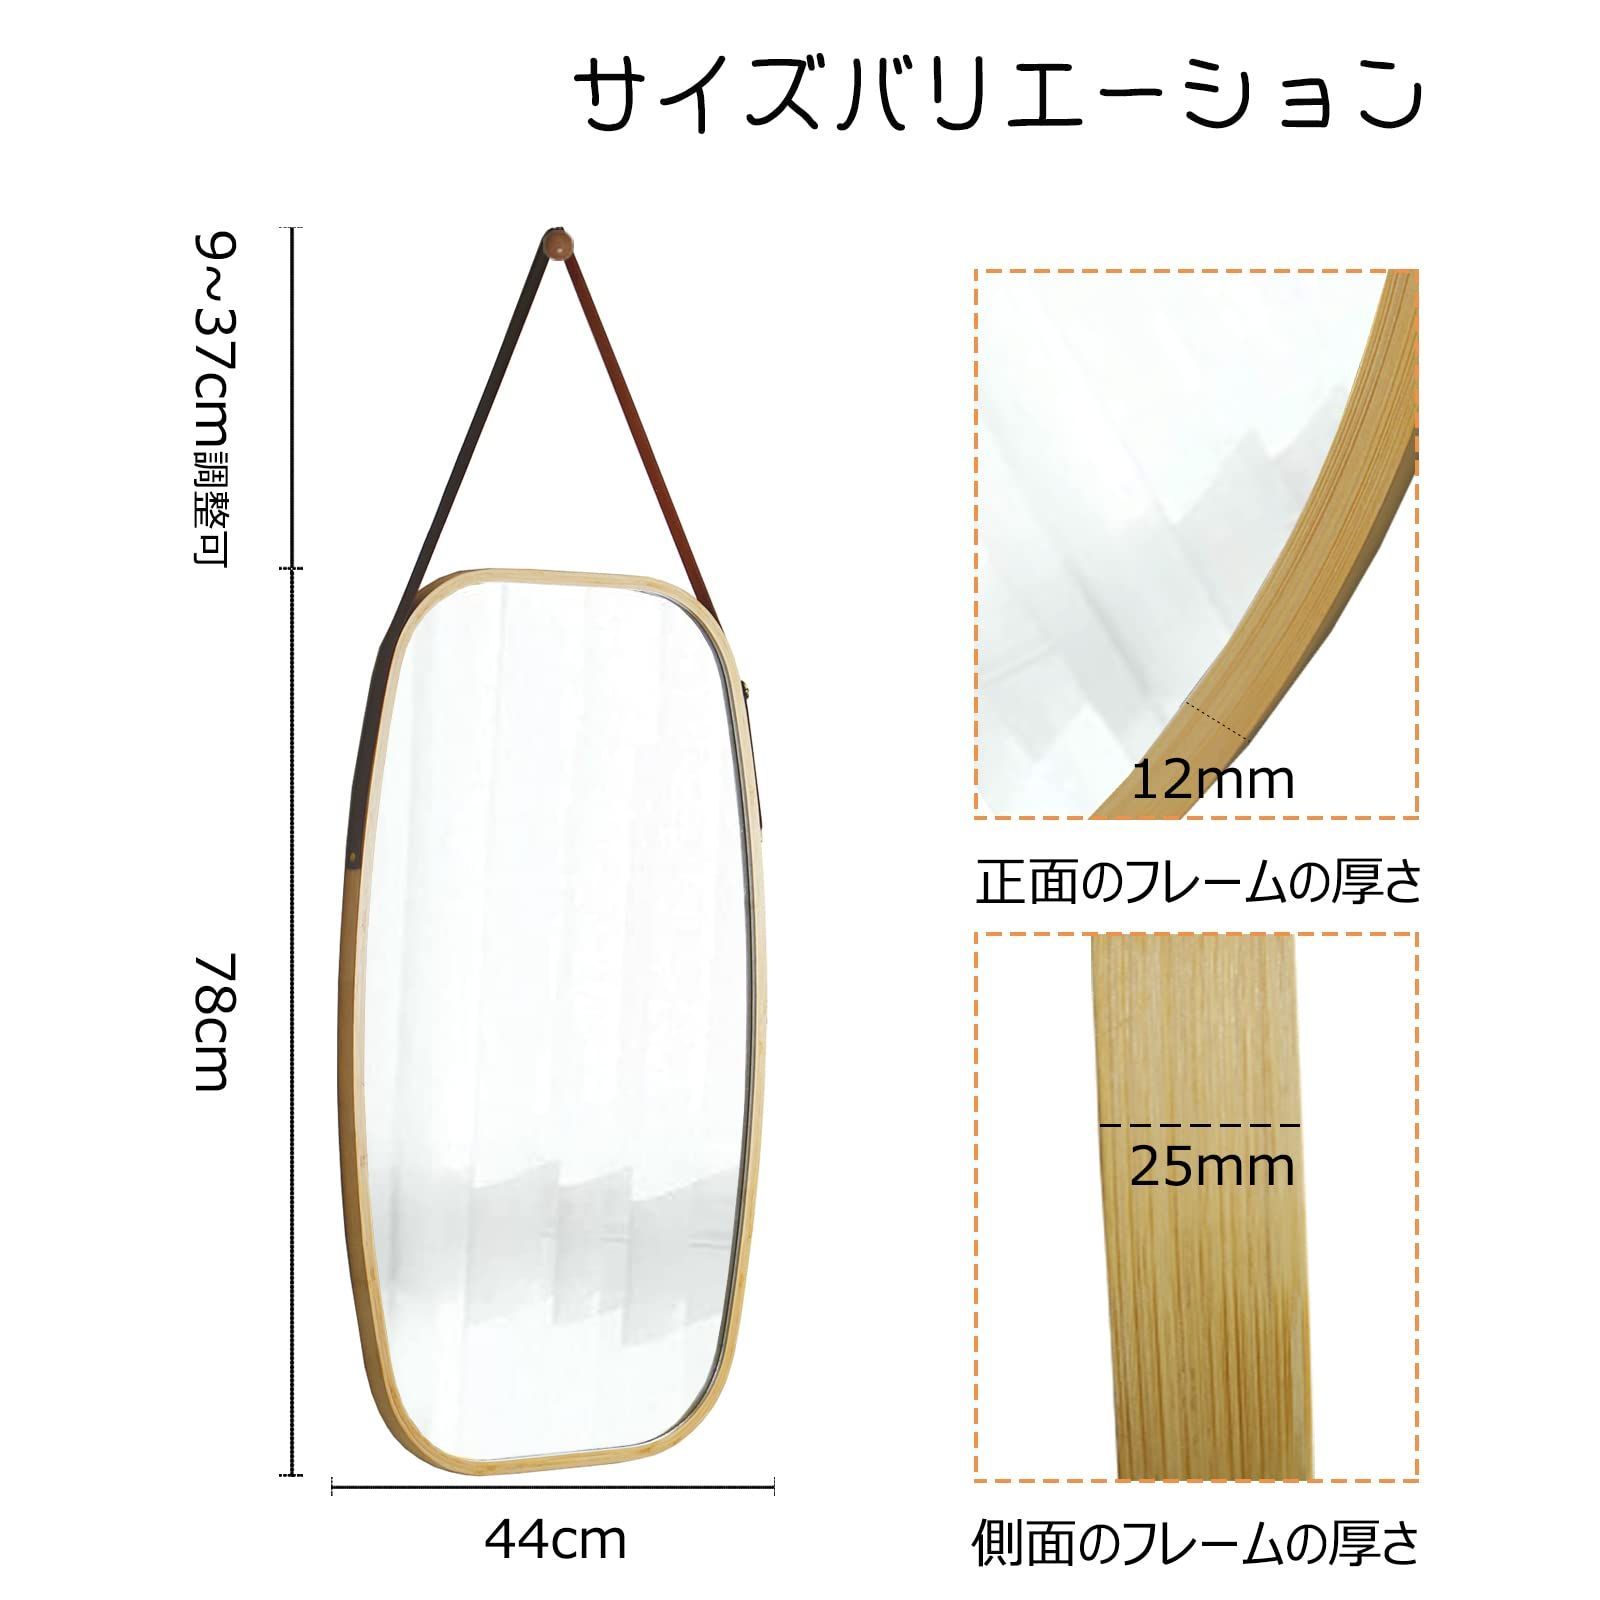 2021最新作 【特価商品】ウォールミラー 全身鏡 姿見鏡 木製 竹製